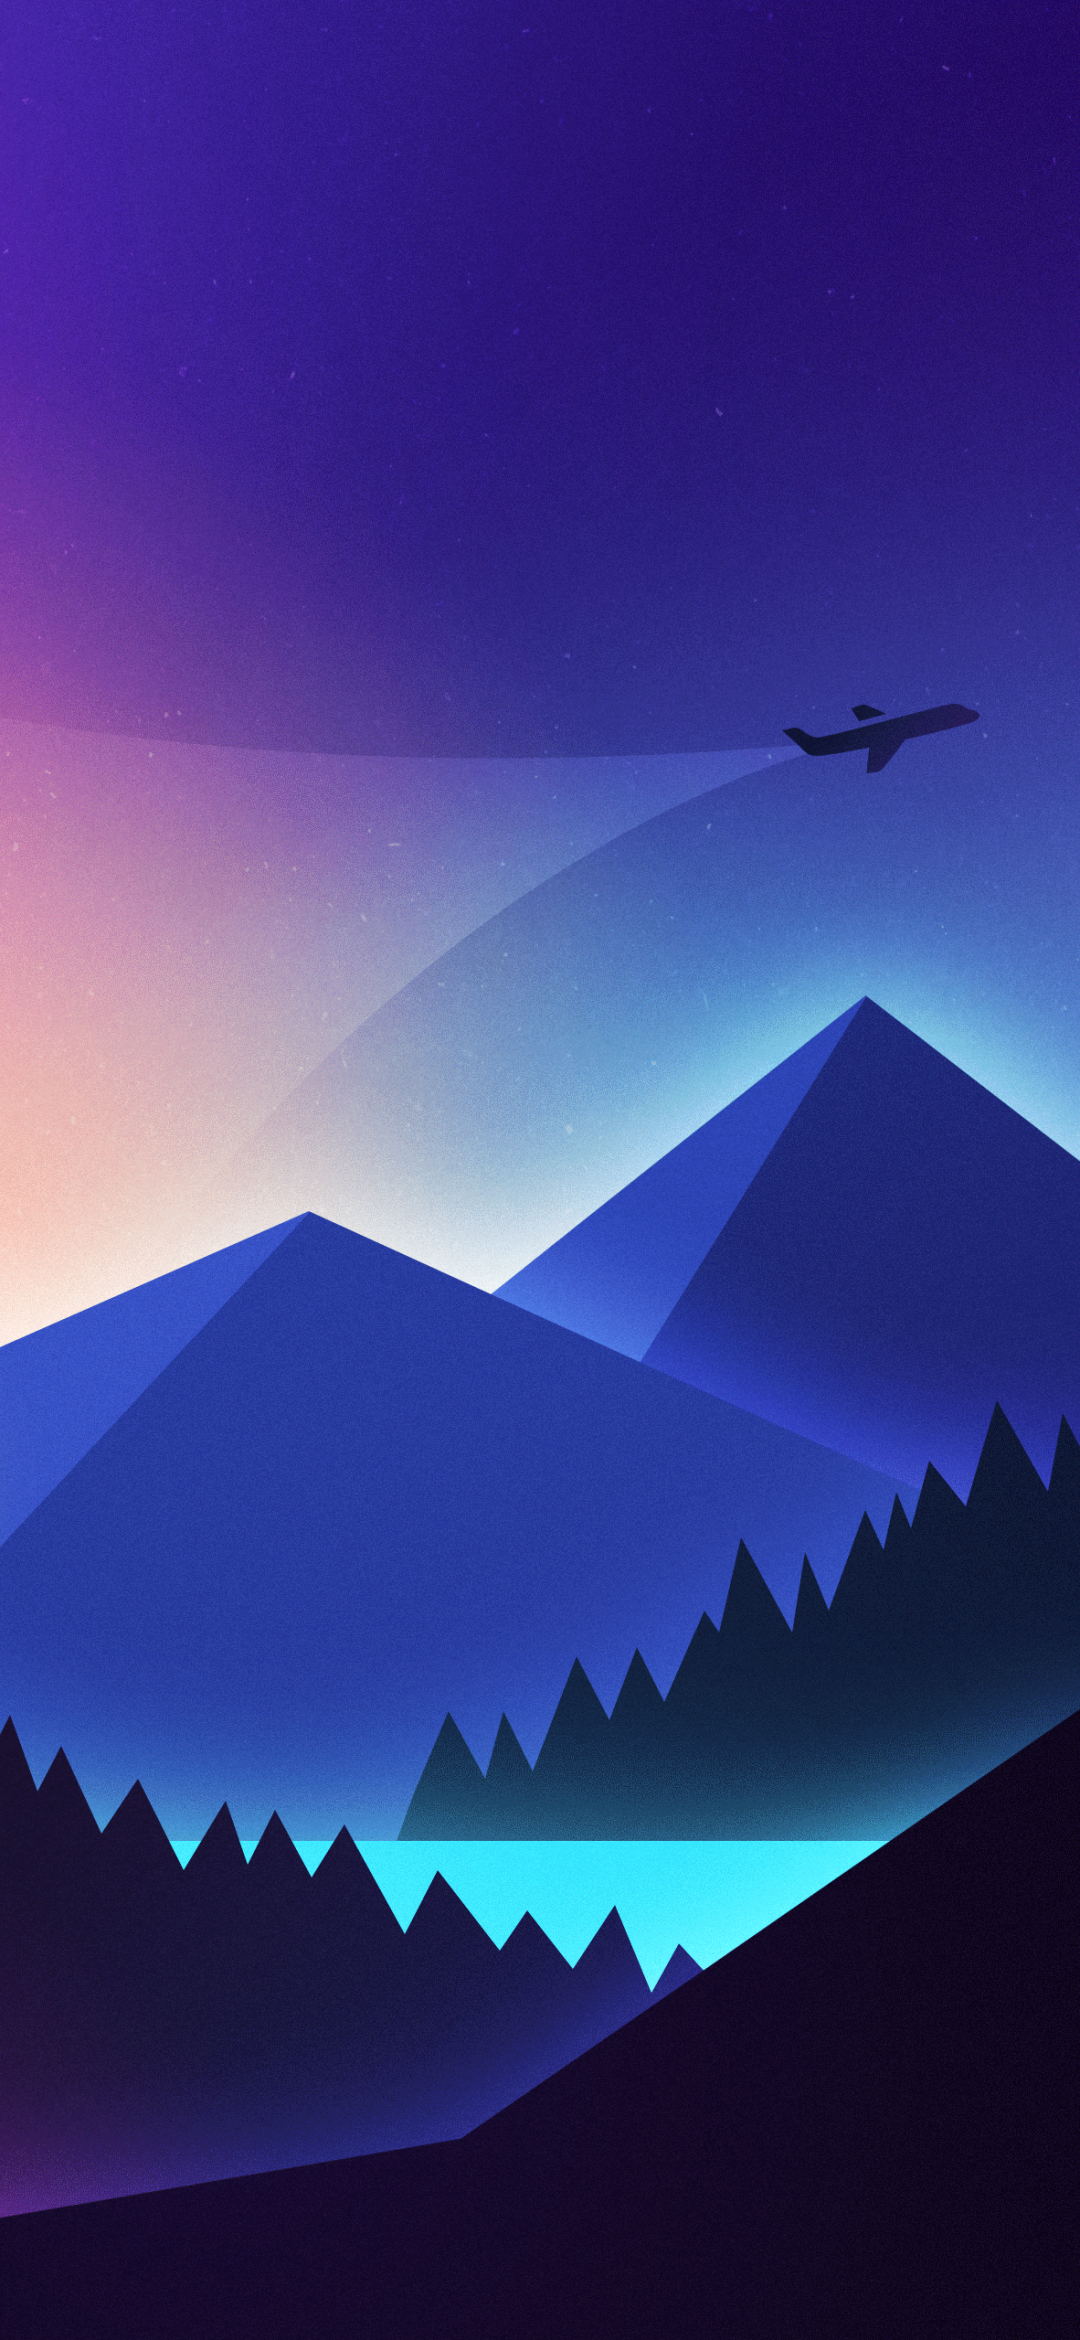 Mountains Wallpaper 4K, Illustration, Flight, Night